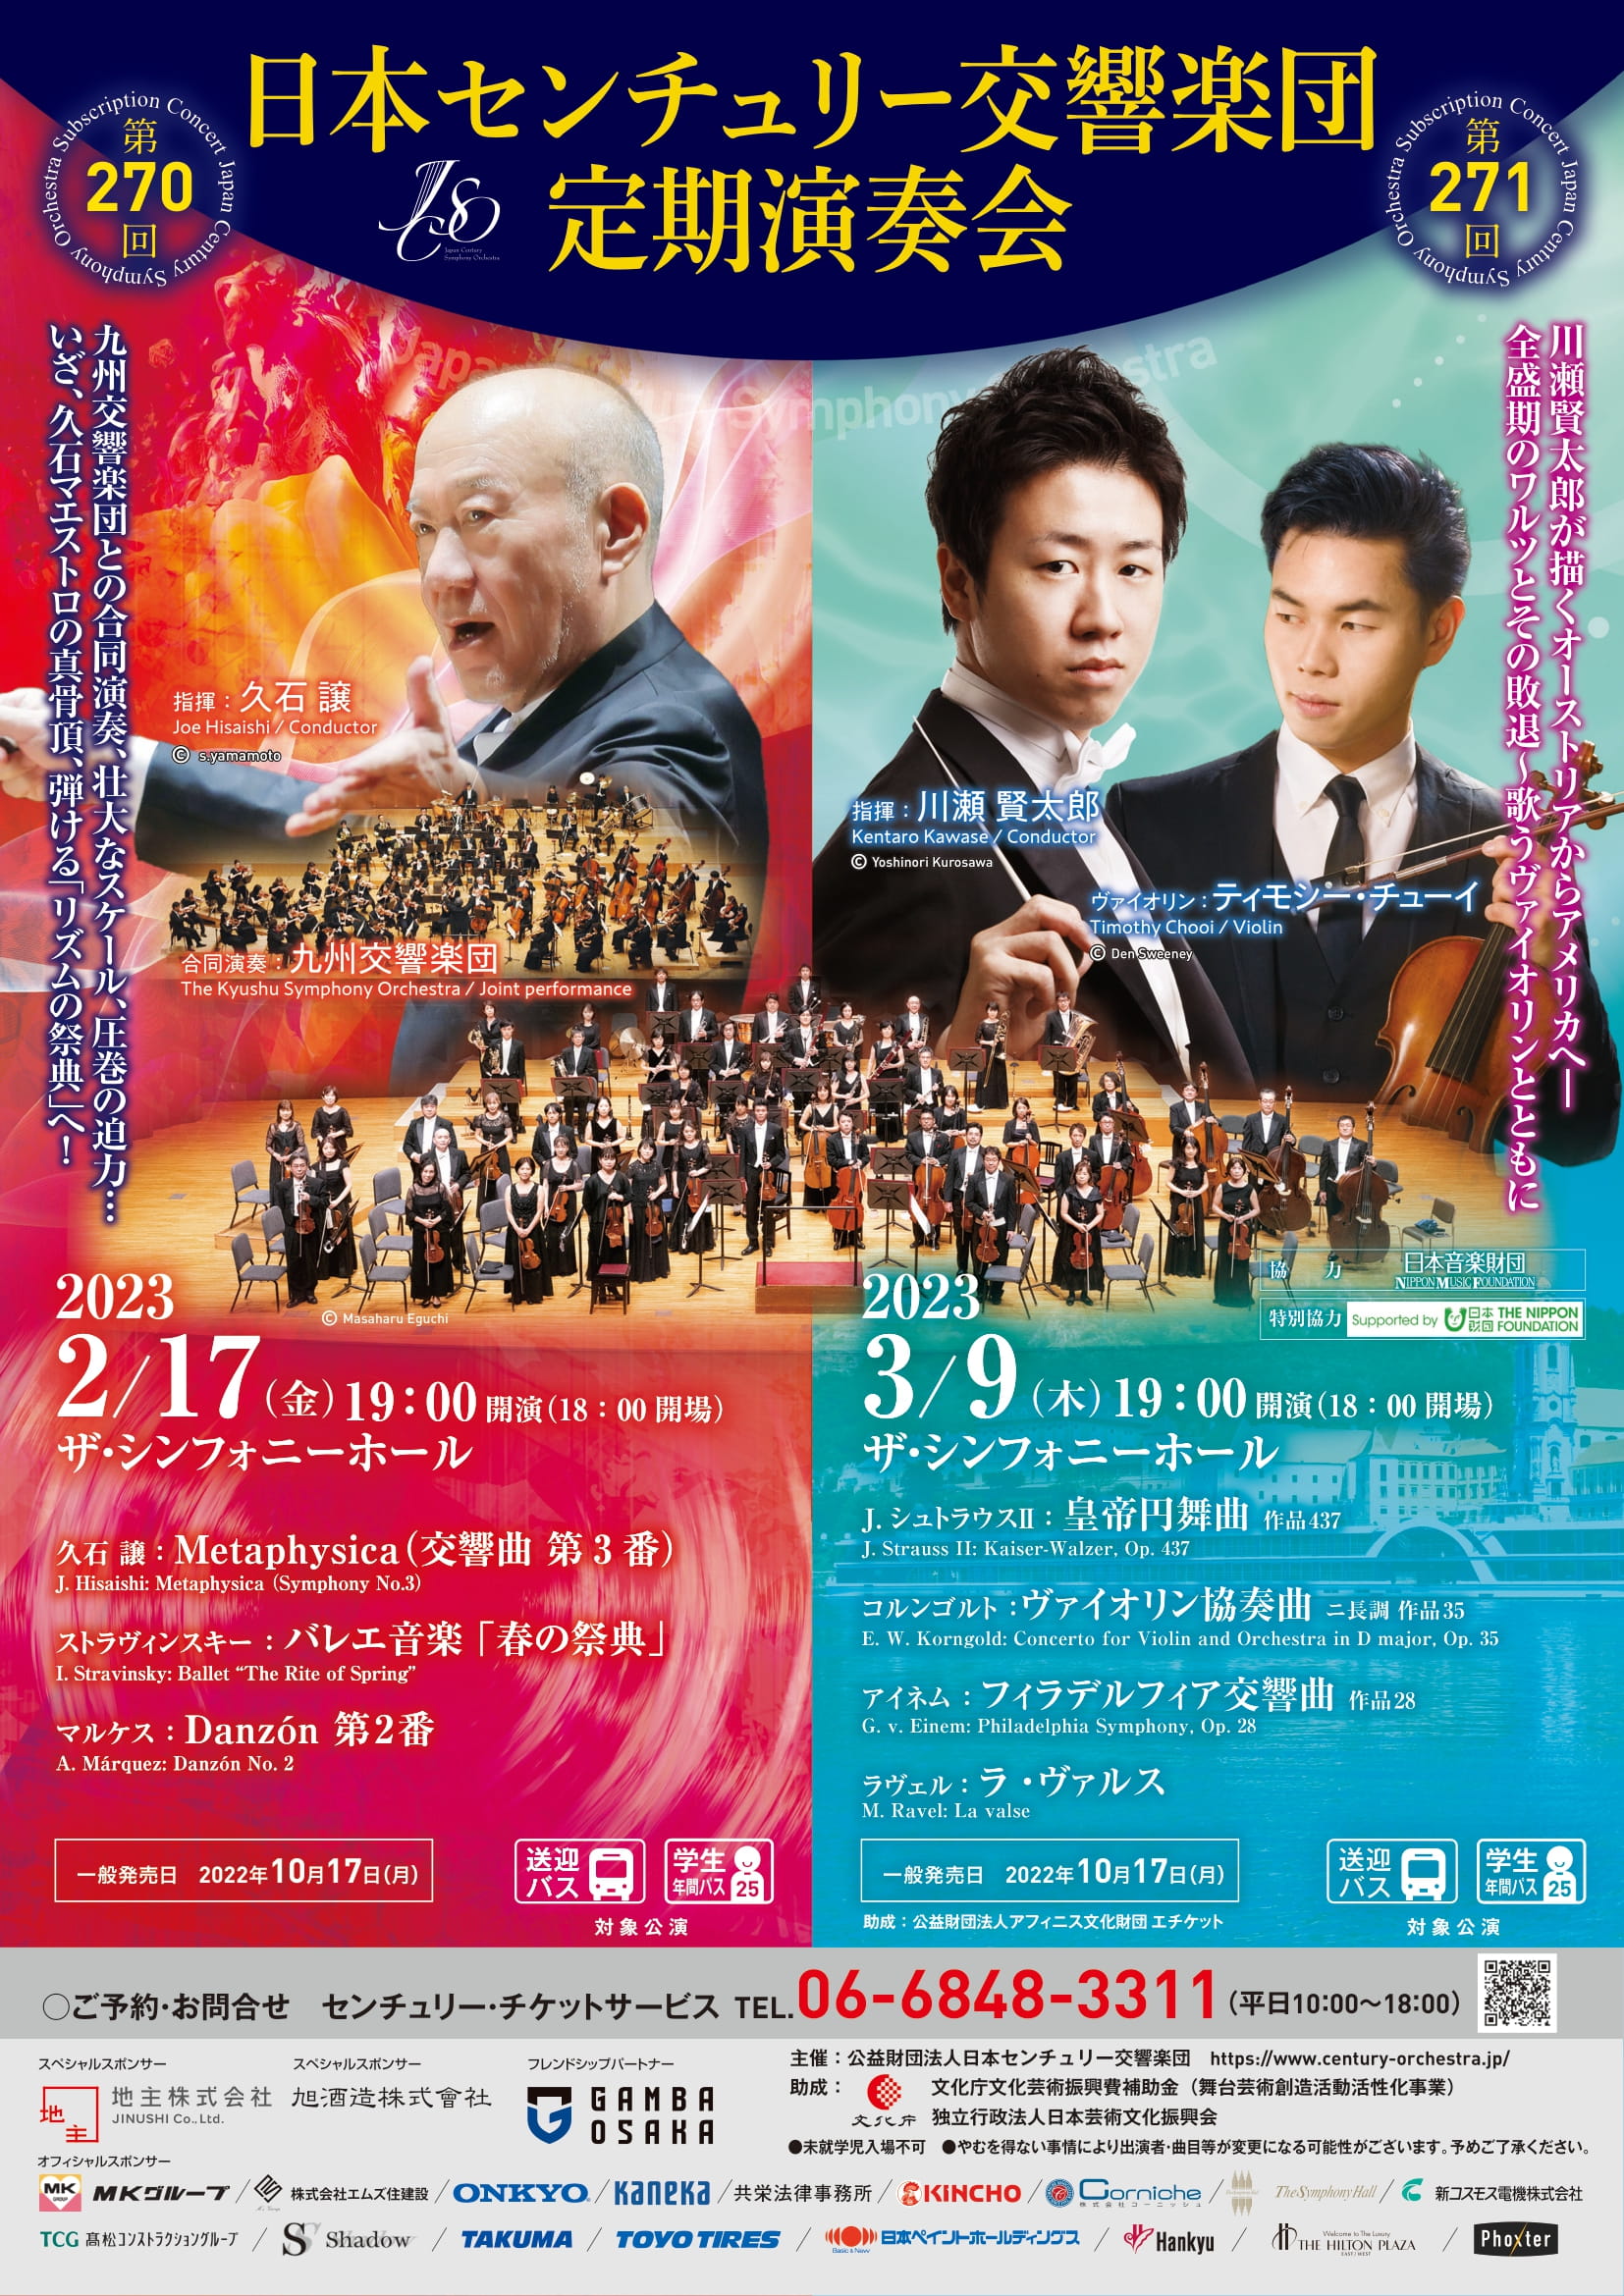 日本センチュリー交響楽団 第270回定期演奏会 || 公益財団法人 九州 